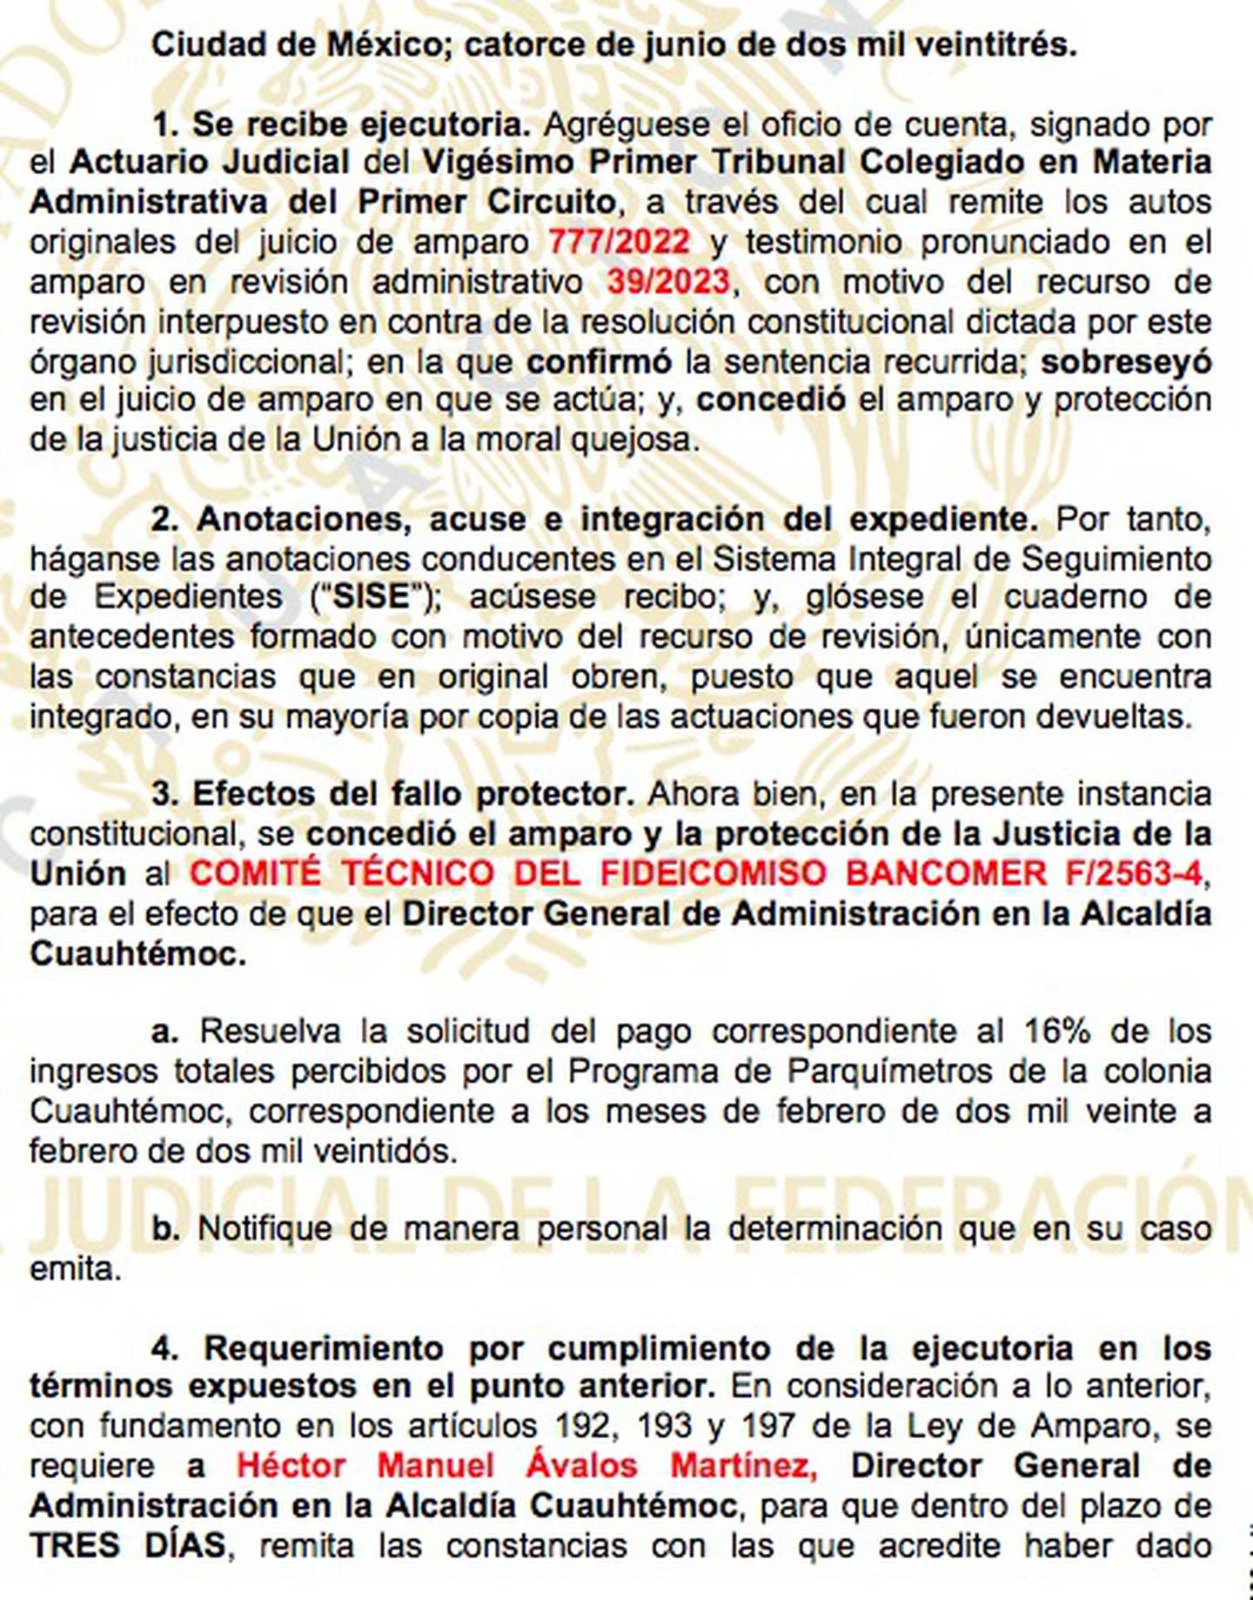 Fallo del Juzgado Decimoquinto de Distrito en Materia Administrativa en la Ciudad de México
